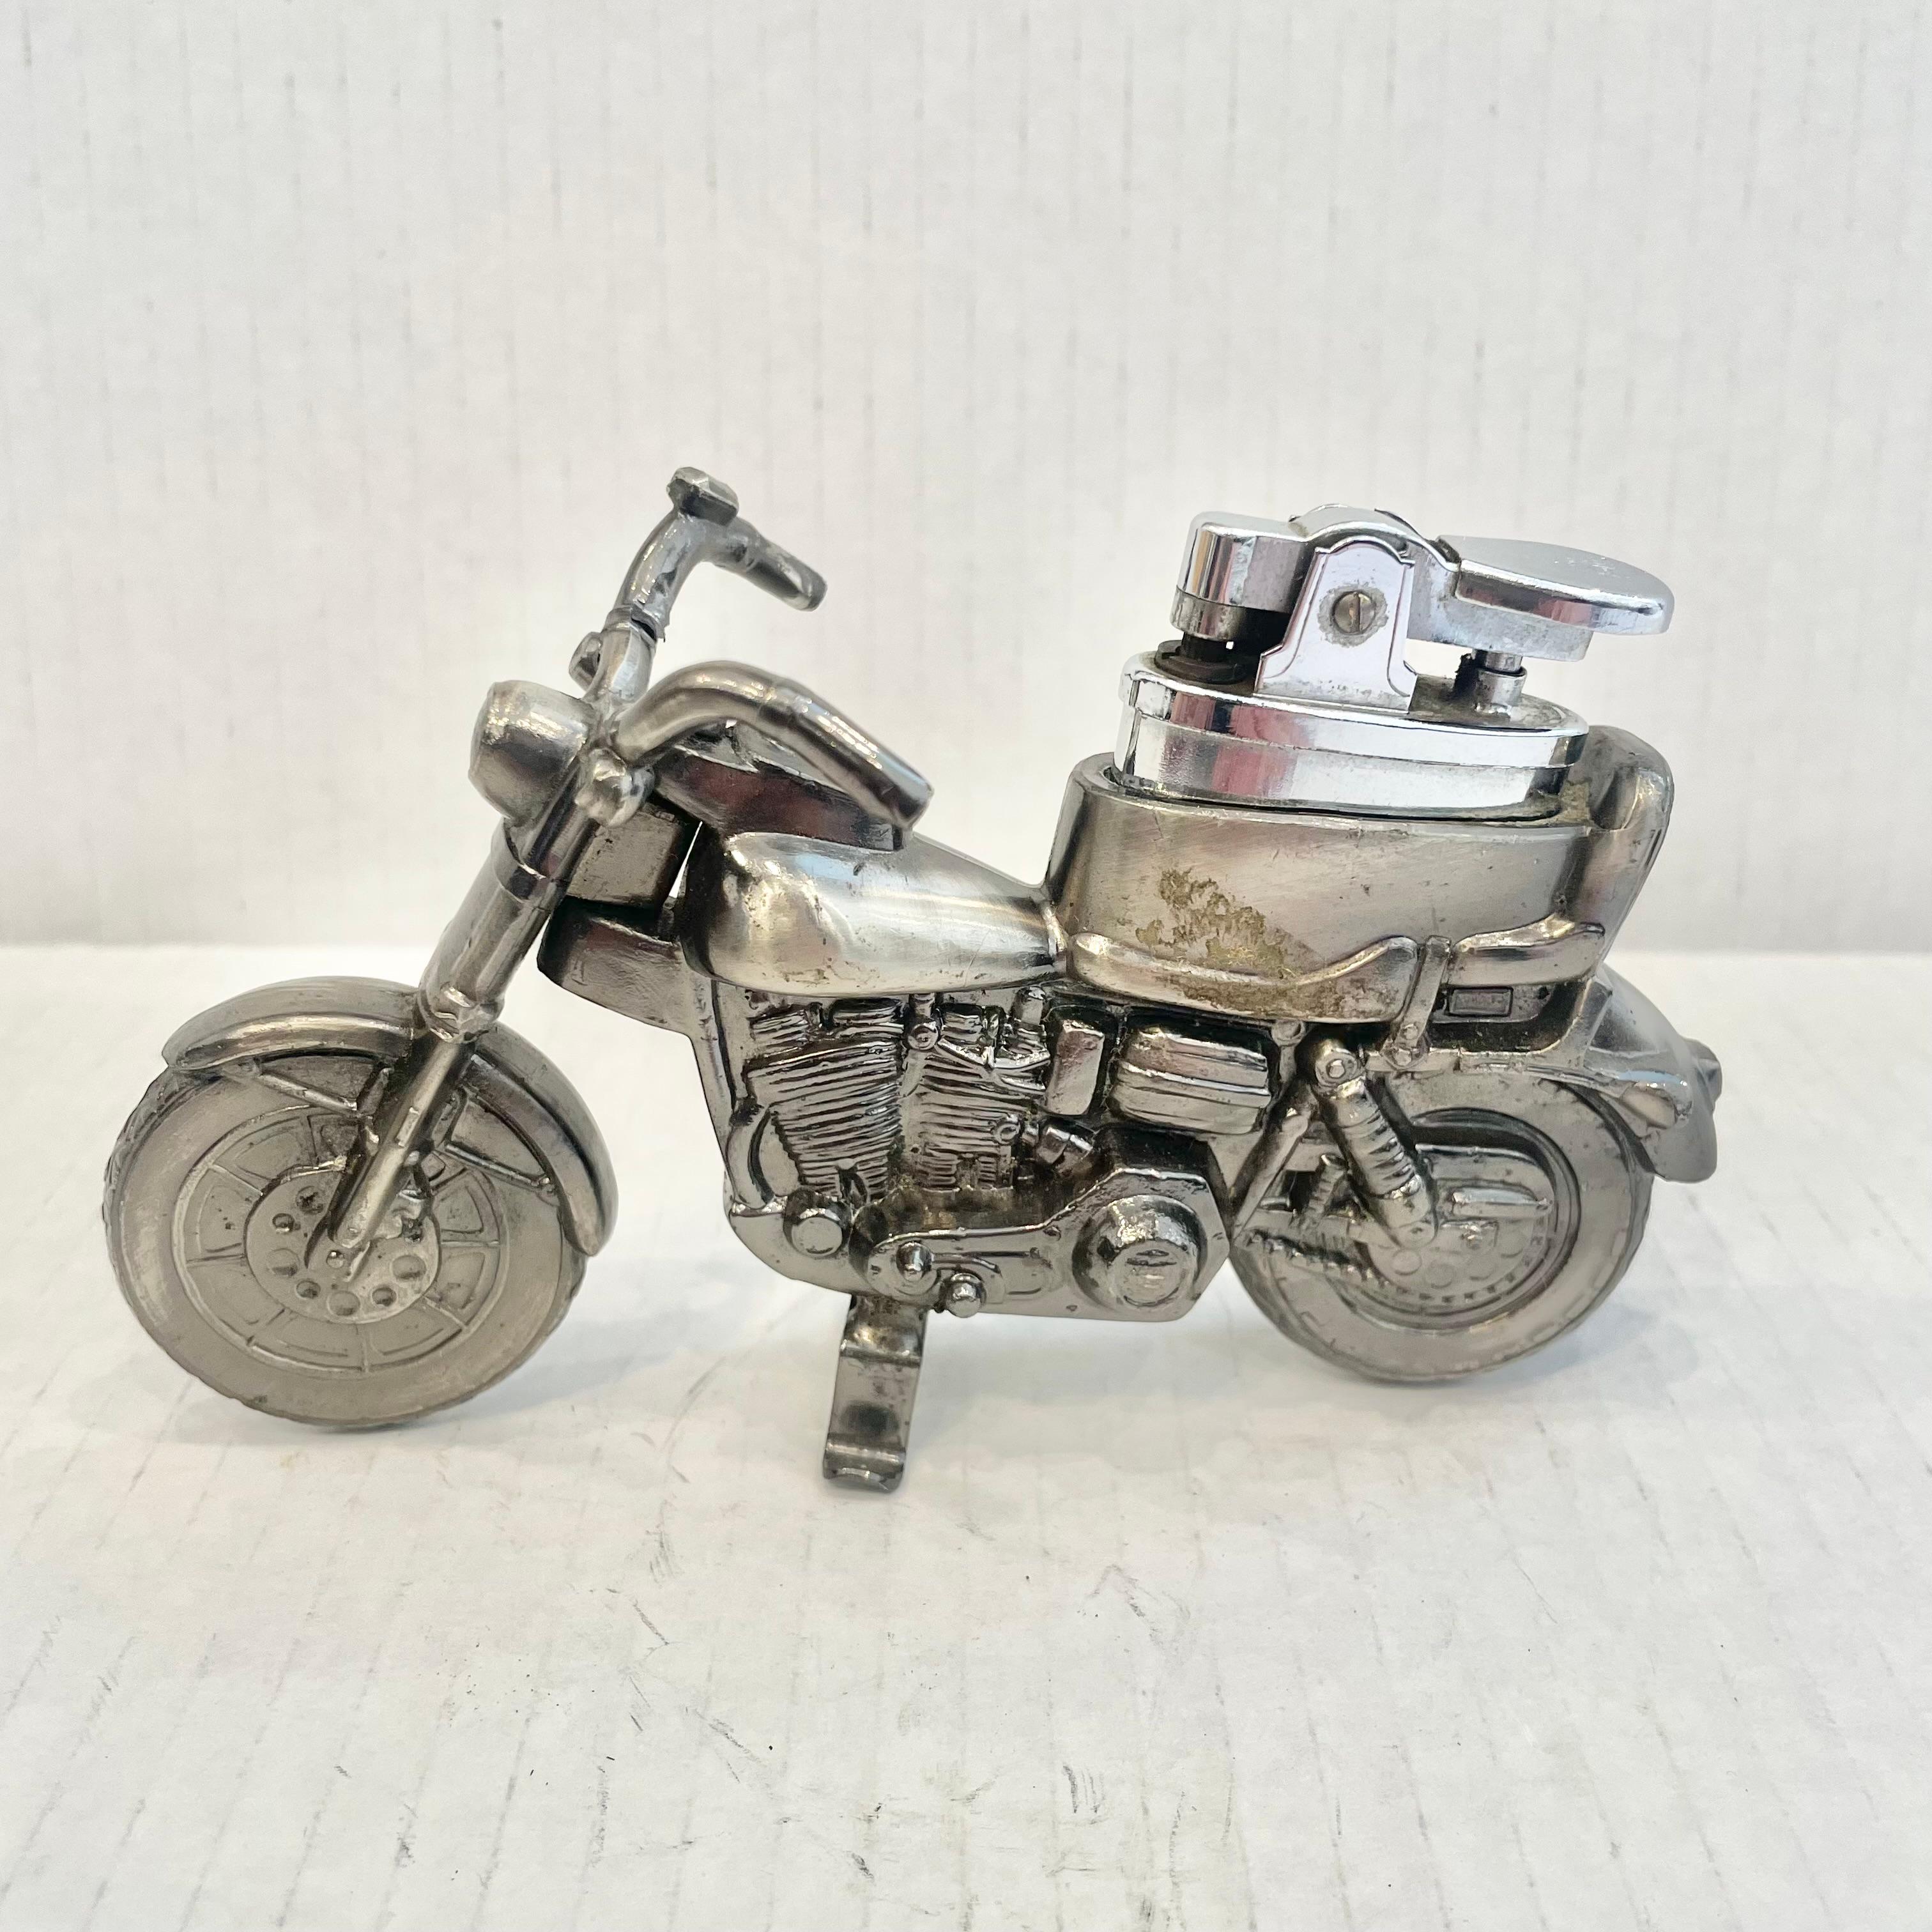 Cooles Vintage-Tischfeuerzeug in Form eines Motorrads. Vollständig aus Metall mit einem hohlen Körper. Schöne brünierte Silber Farbe mit komplizierten Details. Ein cooles Accessoire für den Tabakkonsum und ein Stück Unterhaltung. Leichteres